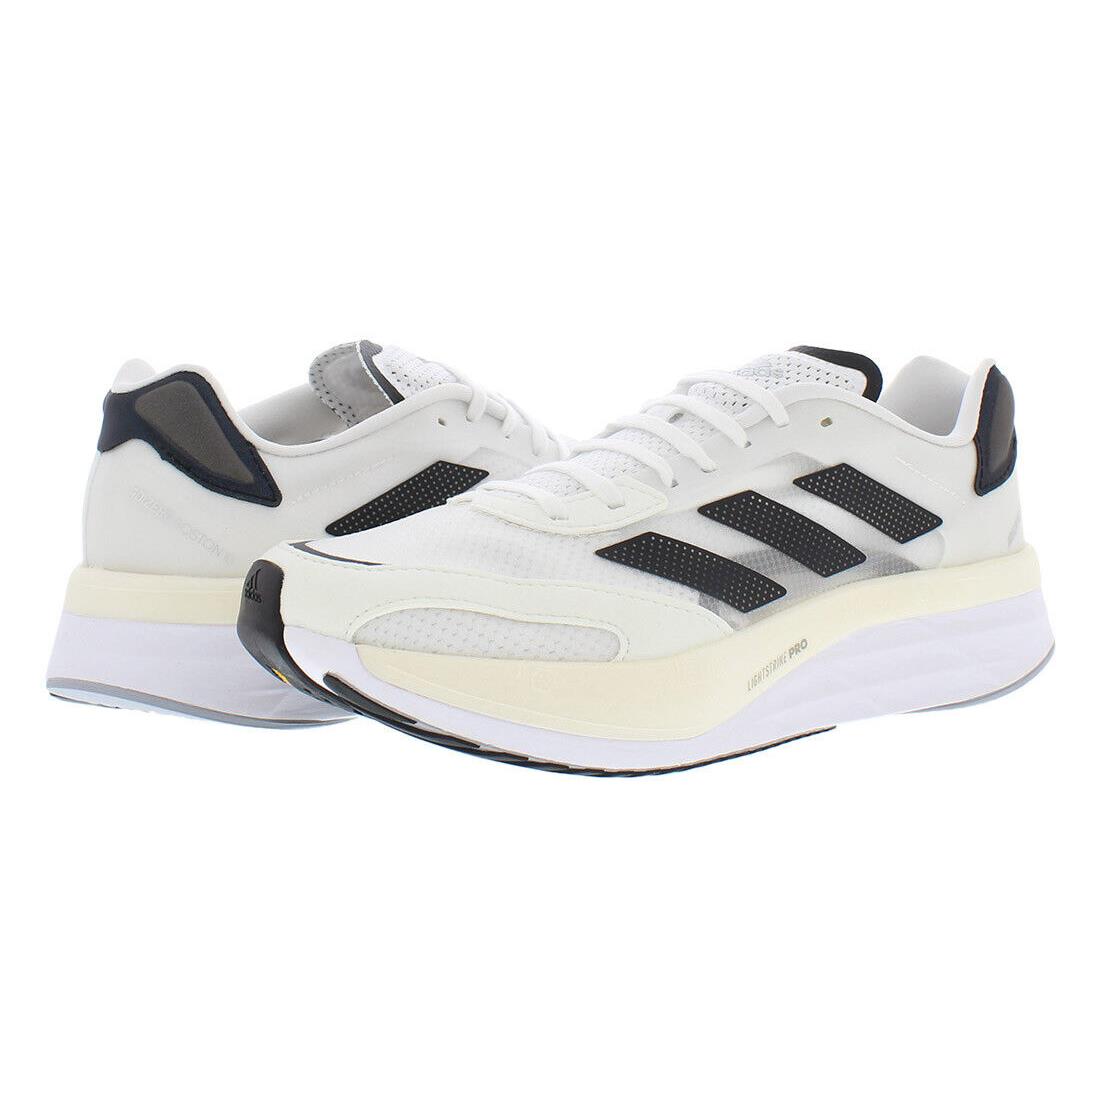 Adidas Adizero Boston 10 Mens Shoes - White/Black, Main: White